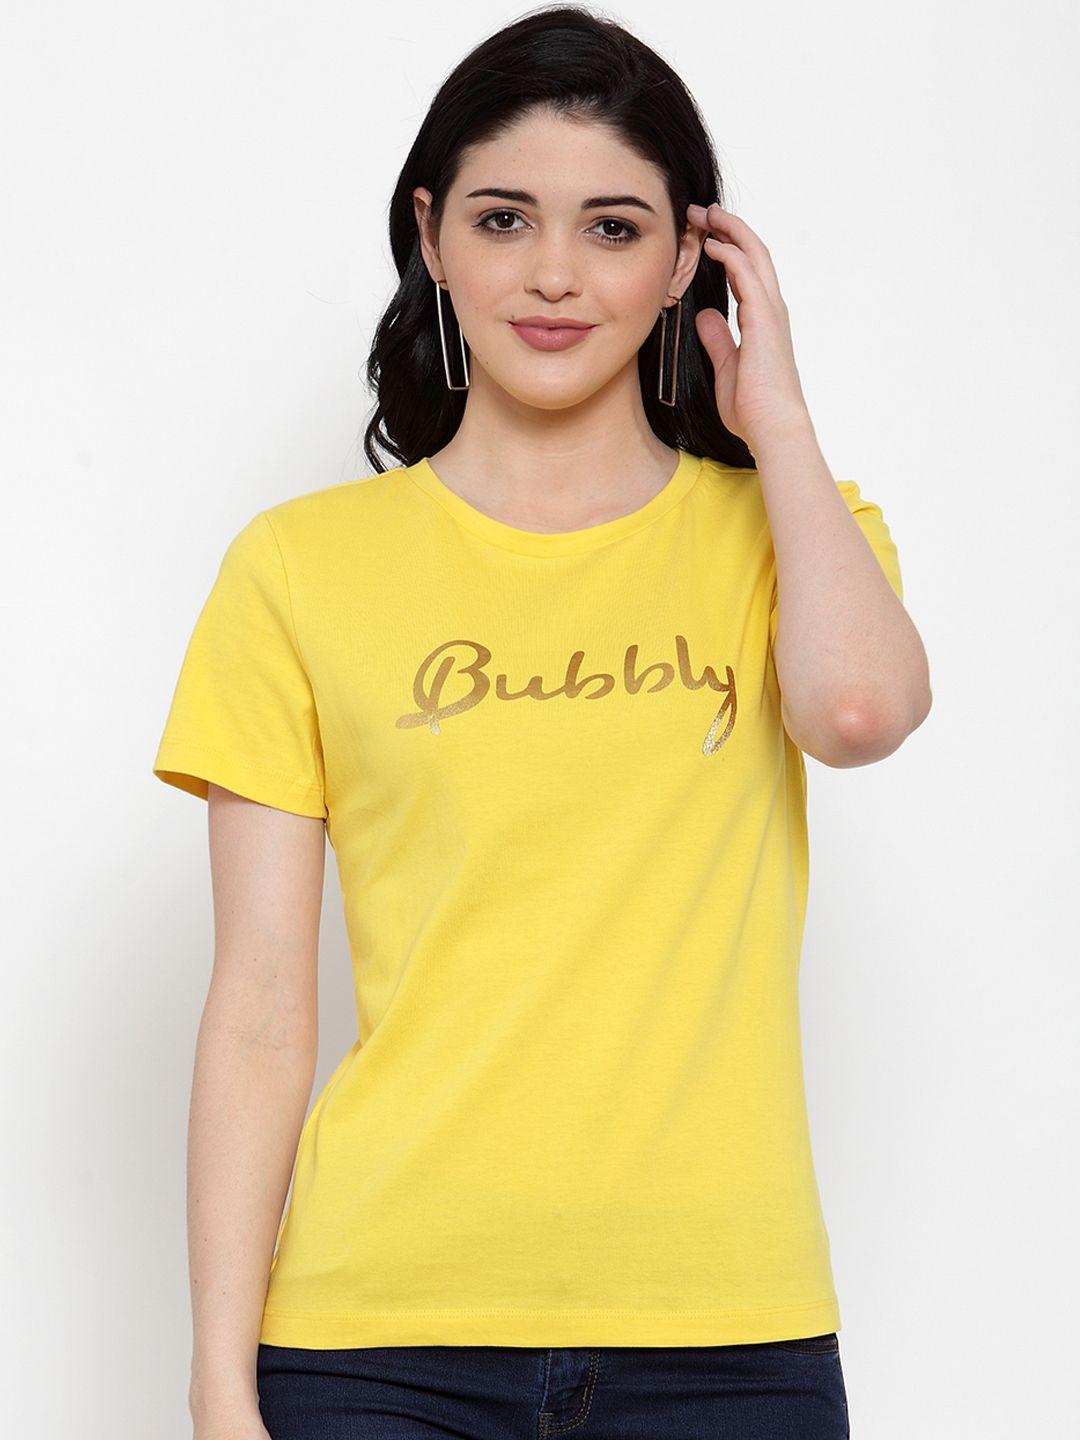 door74 women yellow printed round neck t-shirt